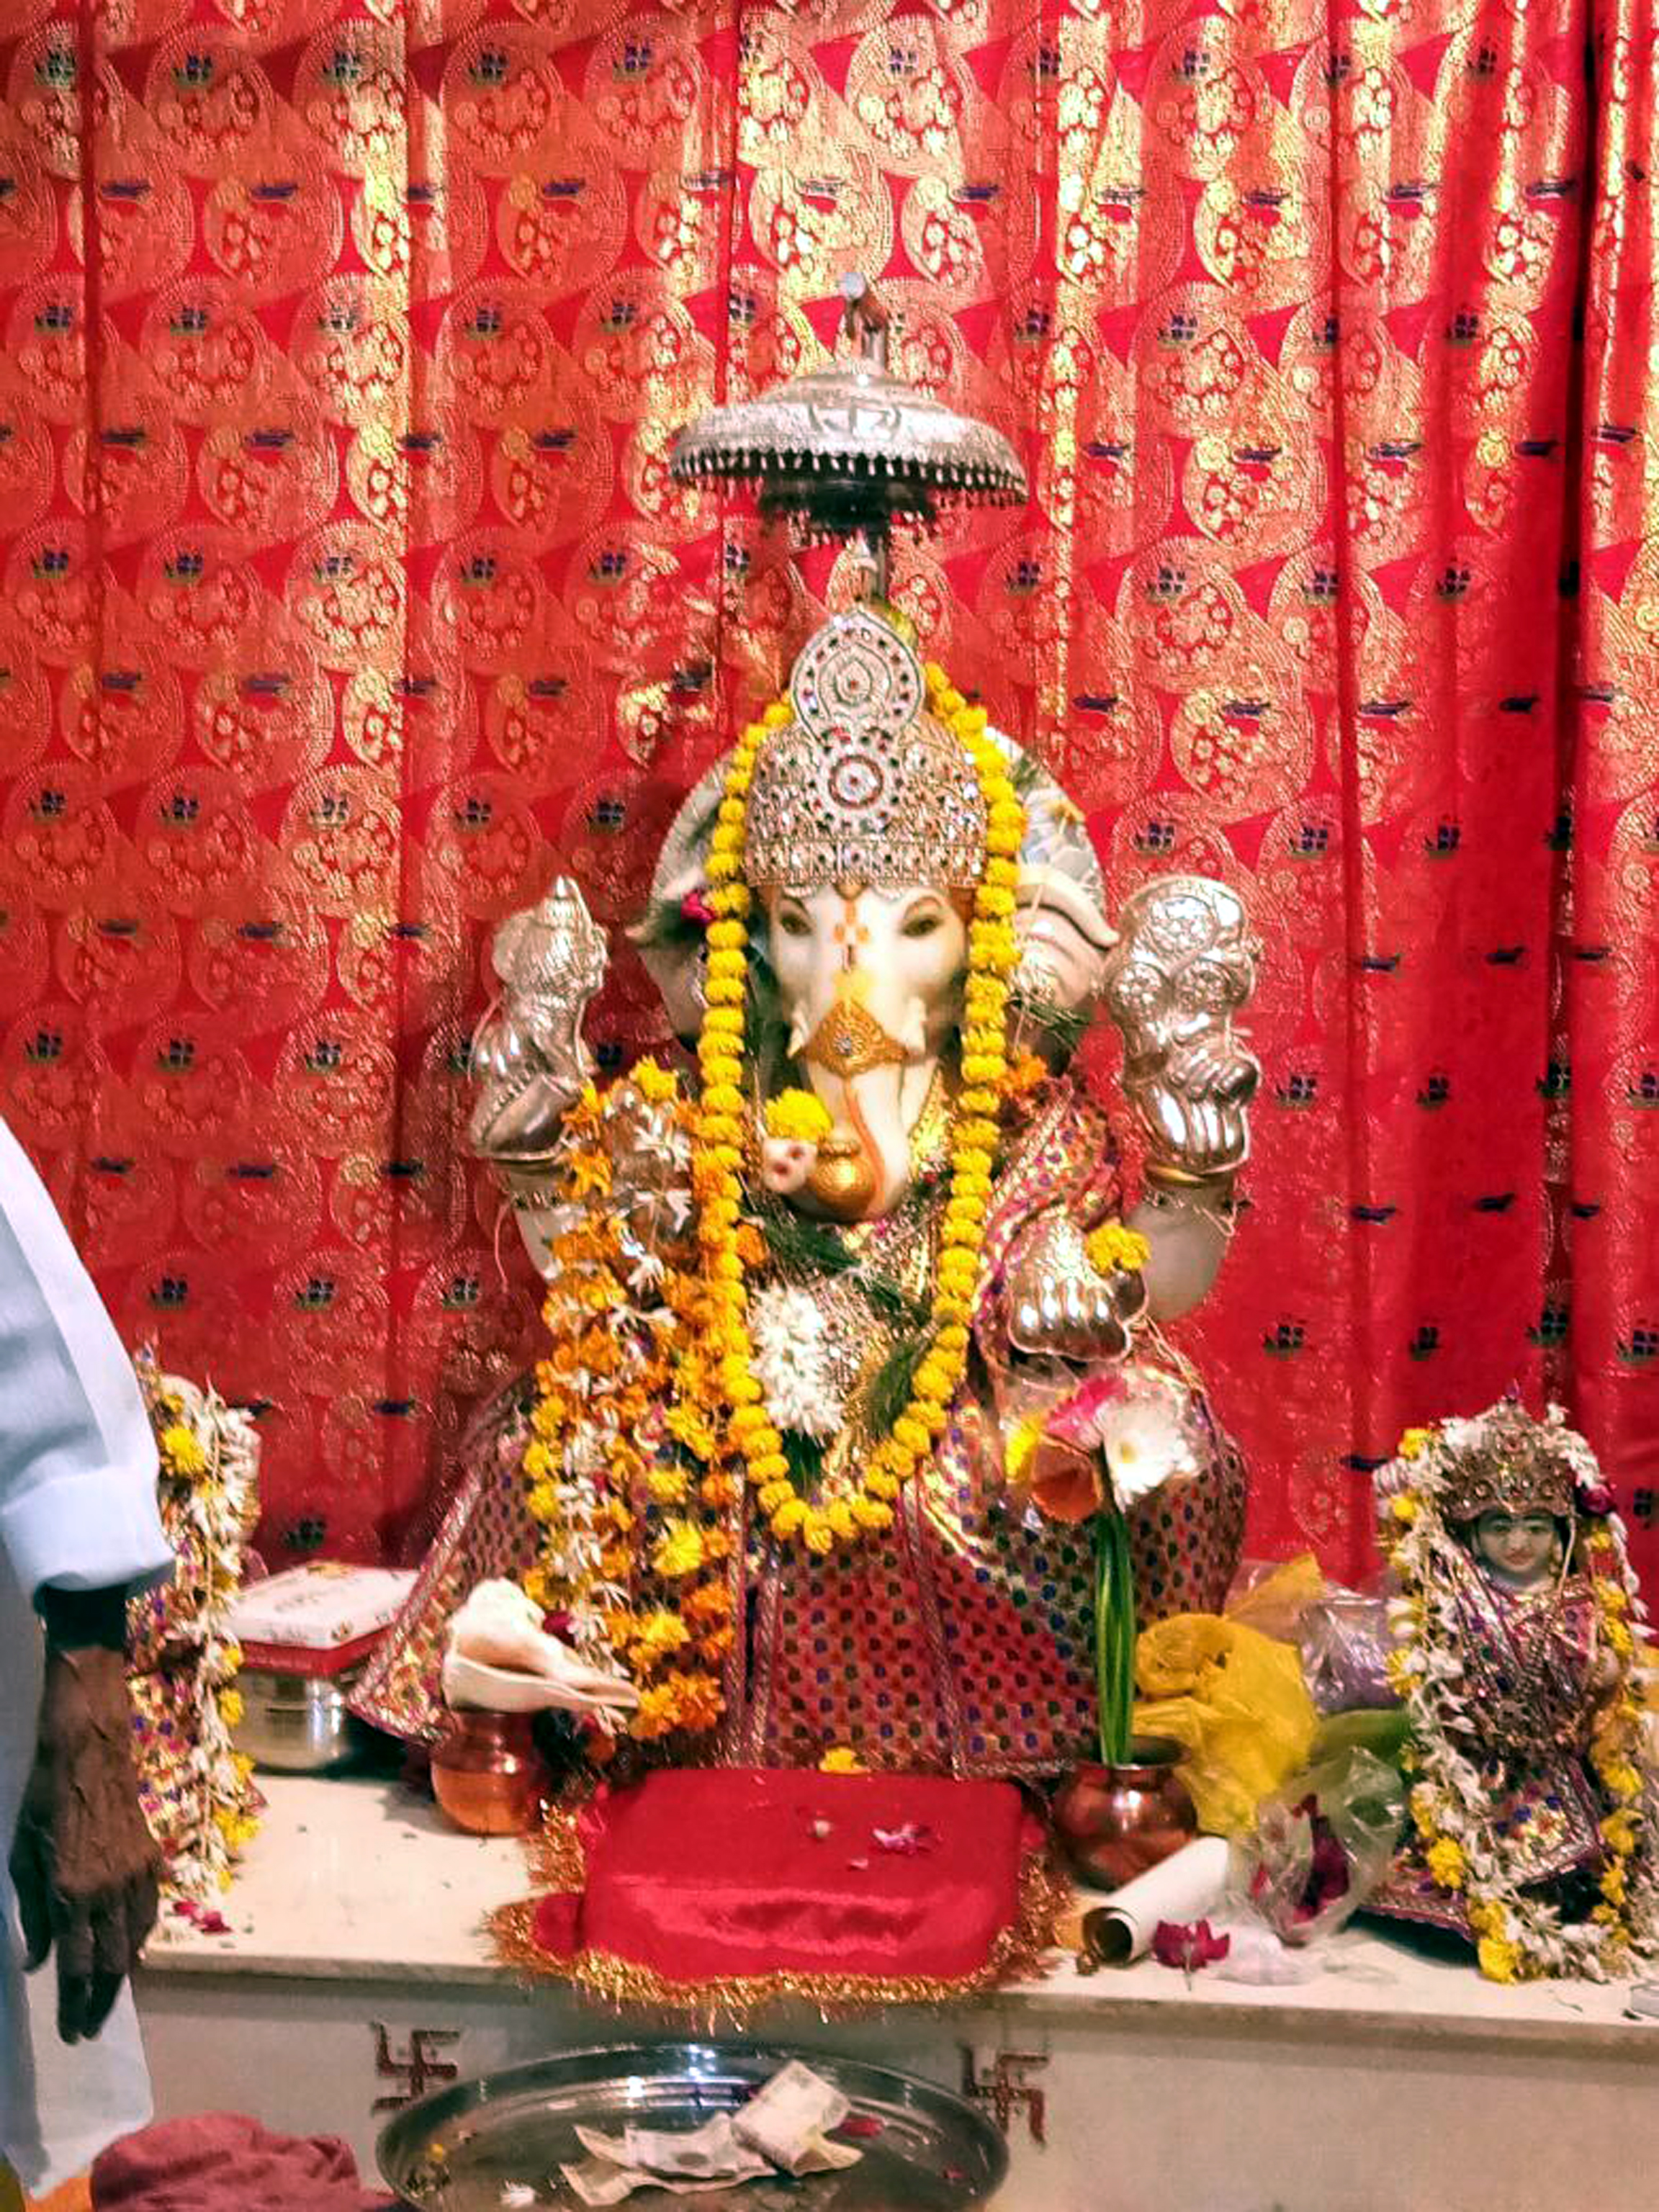 અંકલેશ્વર રામકુંડ ક્ષિપ્રા ગણેશજી મંદિર ખાતે પાંચમાં પાટોત્સવનું ધર્મભીનું આયોજન